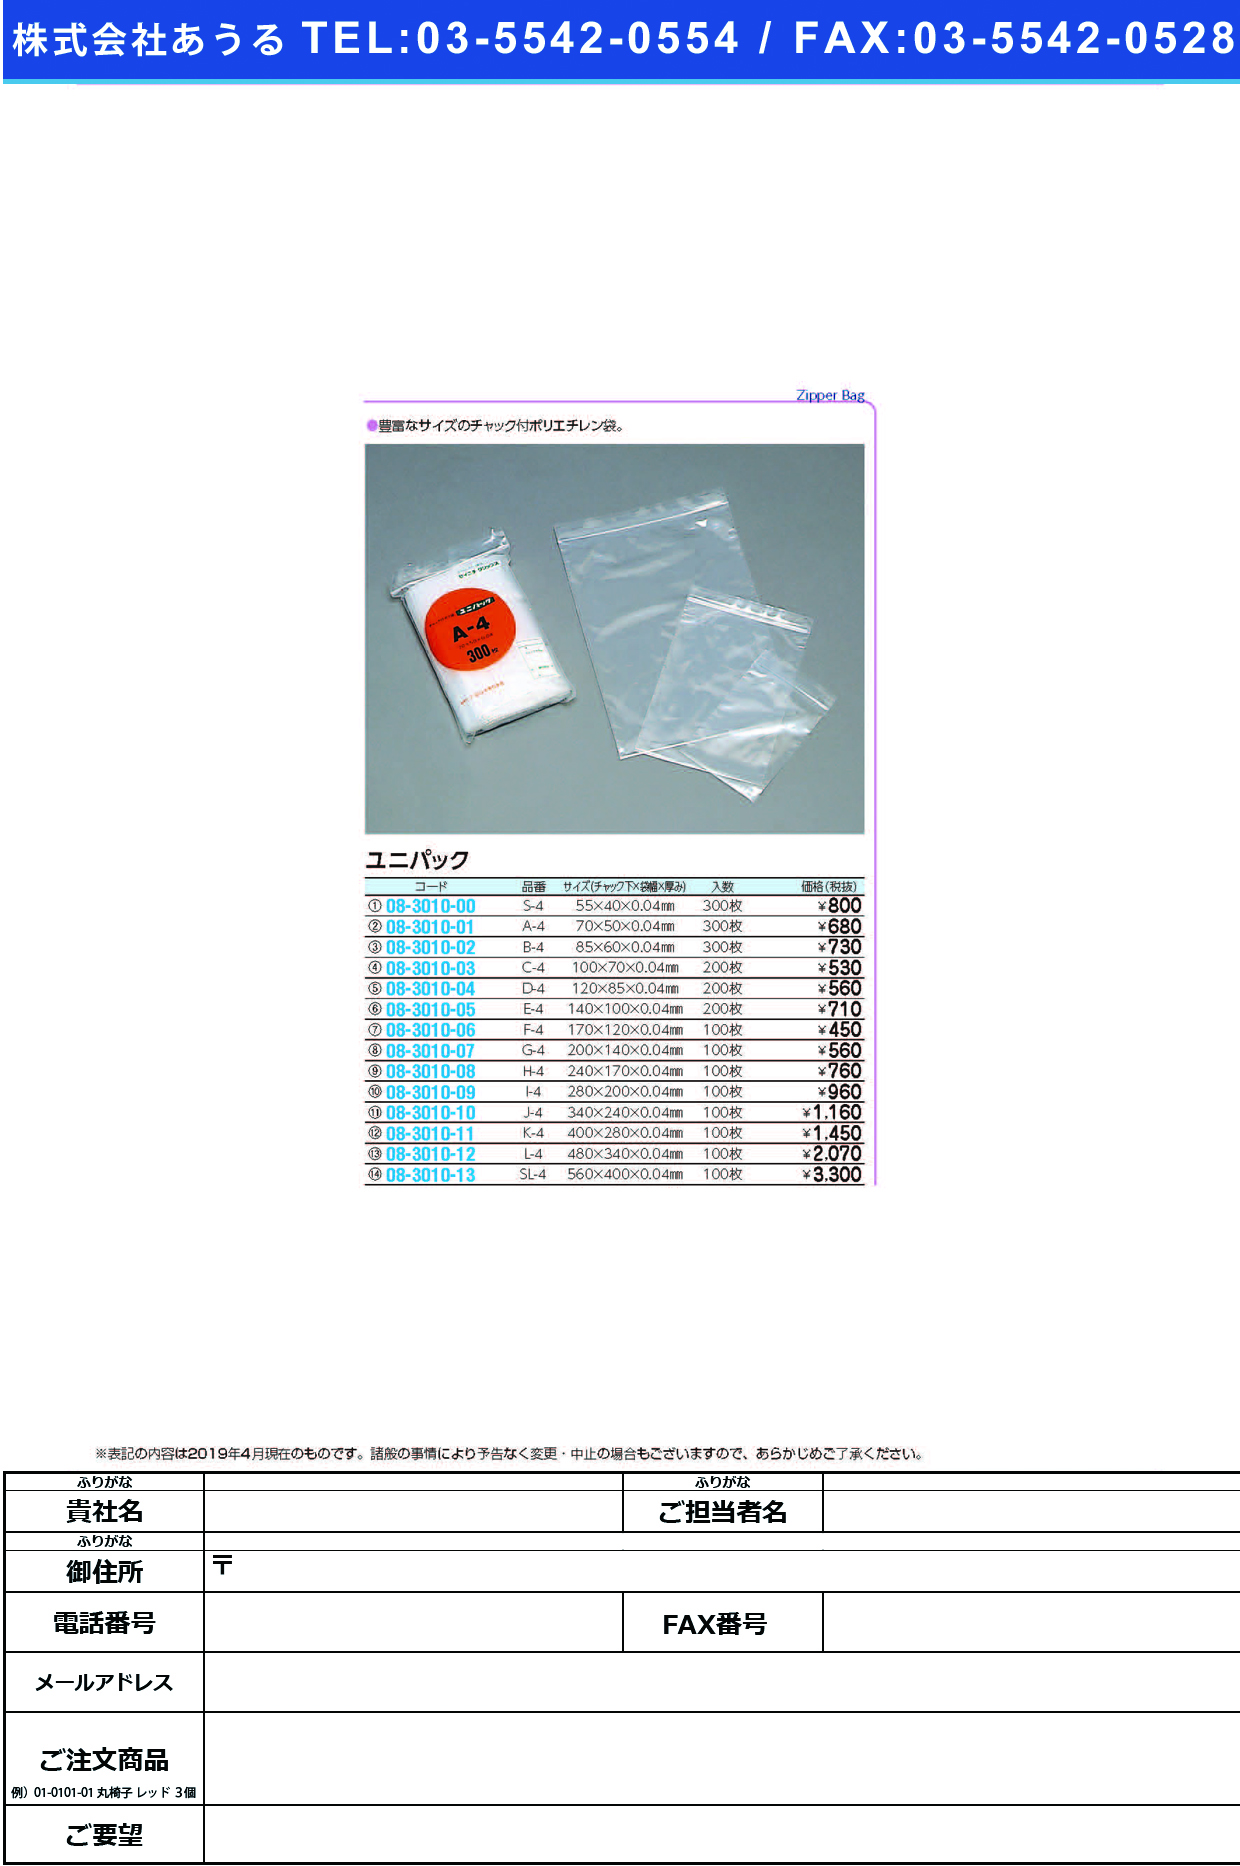 (08-3010-05)ユニパック E-4(140X100MM)200ﾏｲ ﾕﾆﾊﾟｯｸ【1袋単位】【2019年カタログ商品】